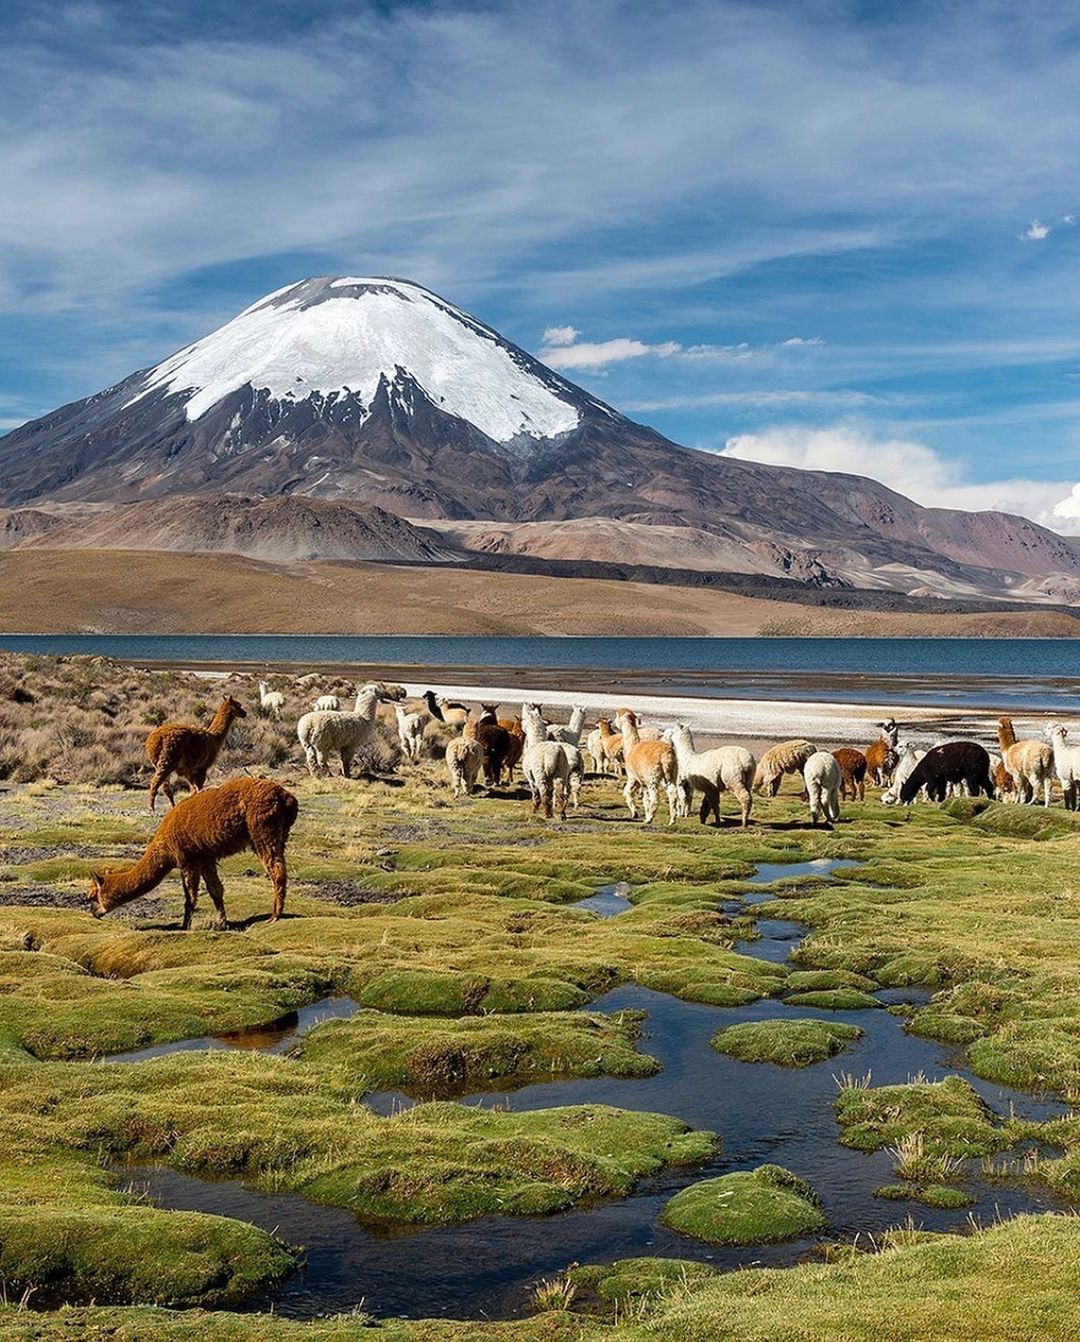 fotografía de llamas y alpacas en el lago chungará con volcán parinacota de fondo